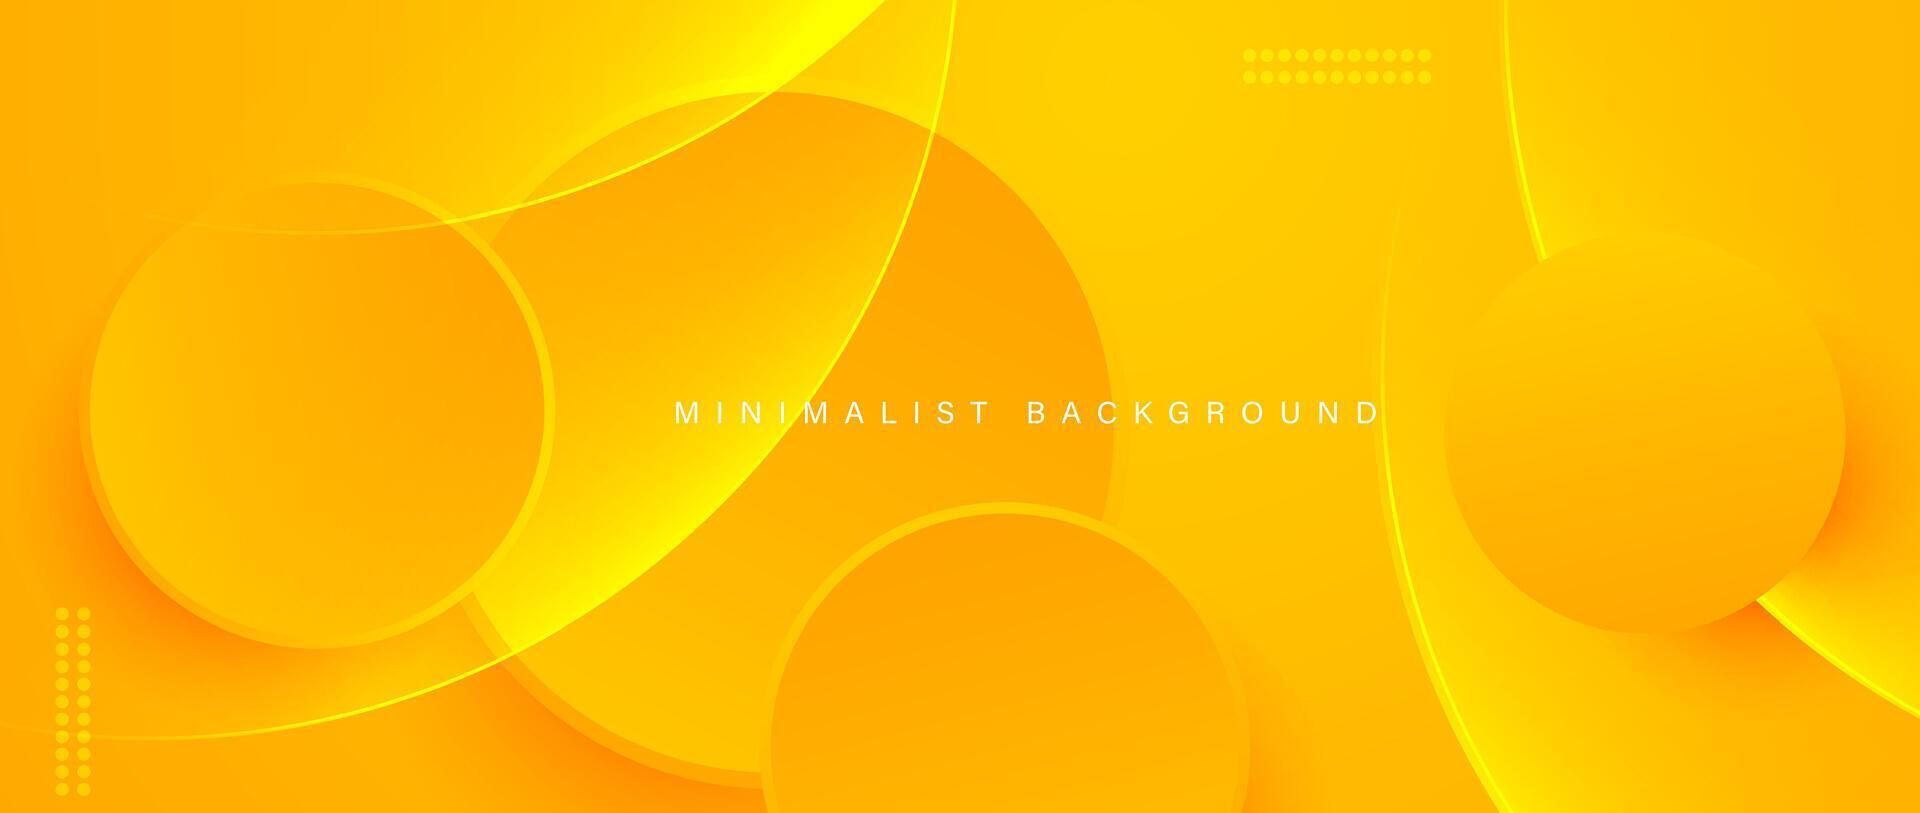 abstrakt minimalistisk gul bakgrund med cirkulär element vektor